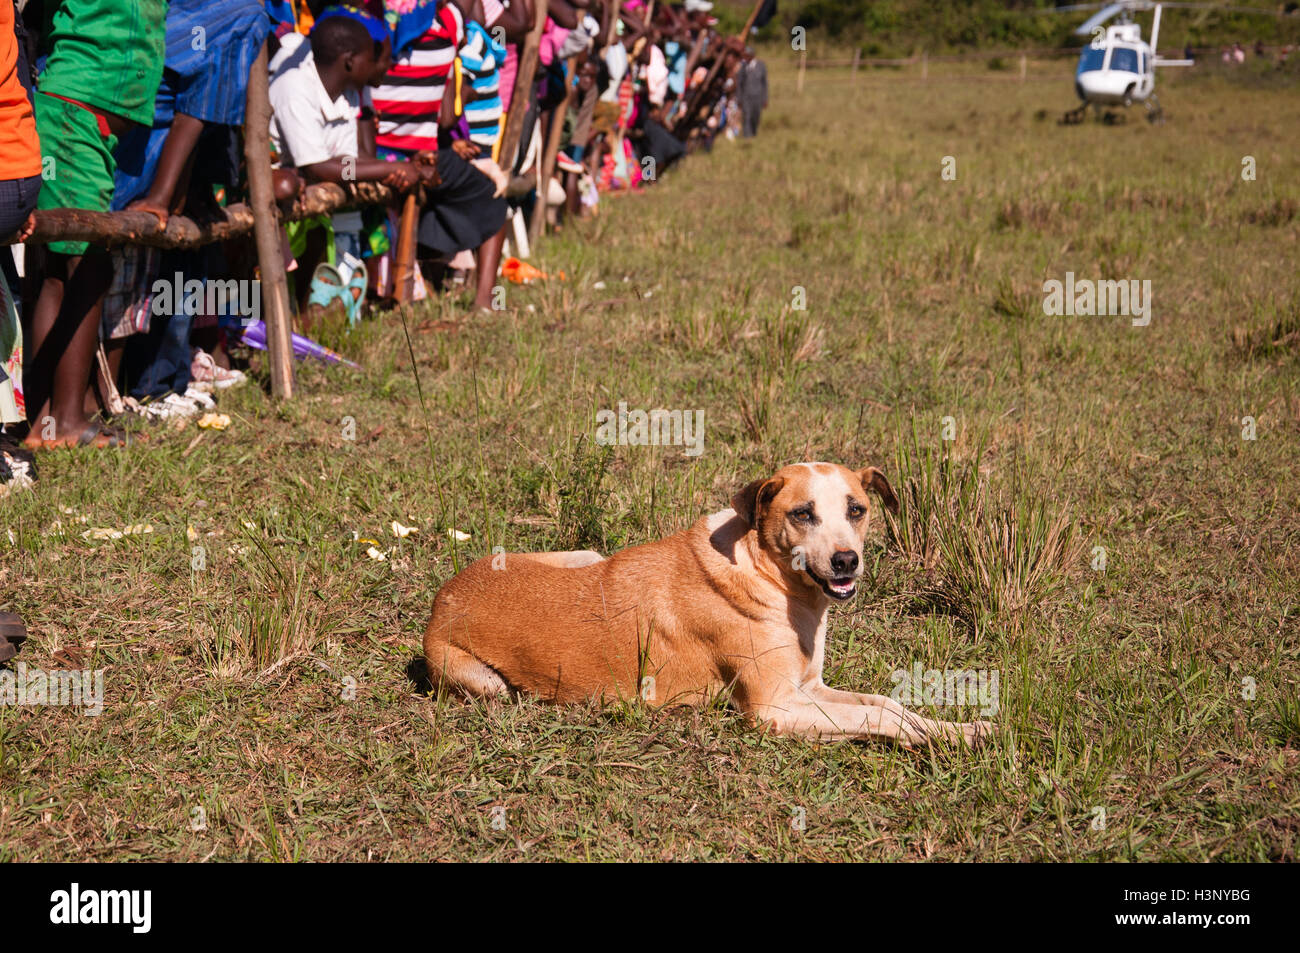 Immagine di un cane randagio nel Mozambico settentrionale in posa nella parte anteriore della fotocamera a una raccolta locale. Foto Stock